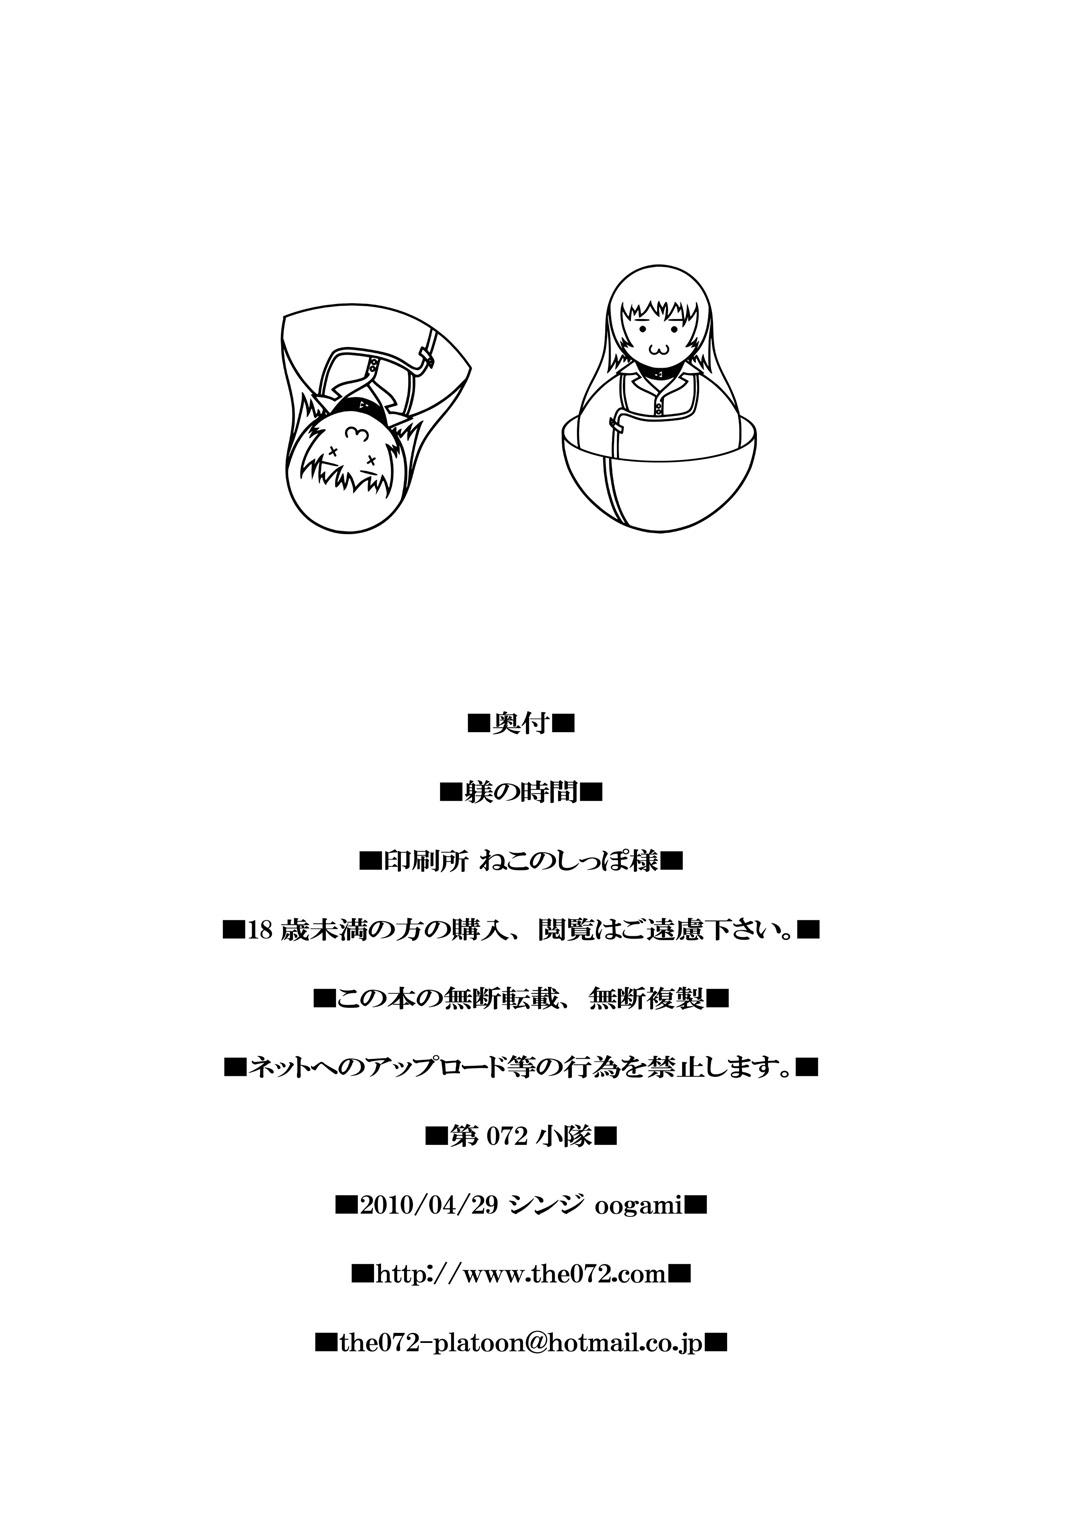 Gordibuena Shitsuke no Jikan - Seikon no qwaser Perra - Page 22